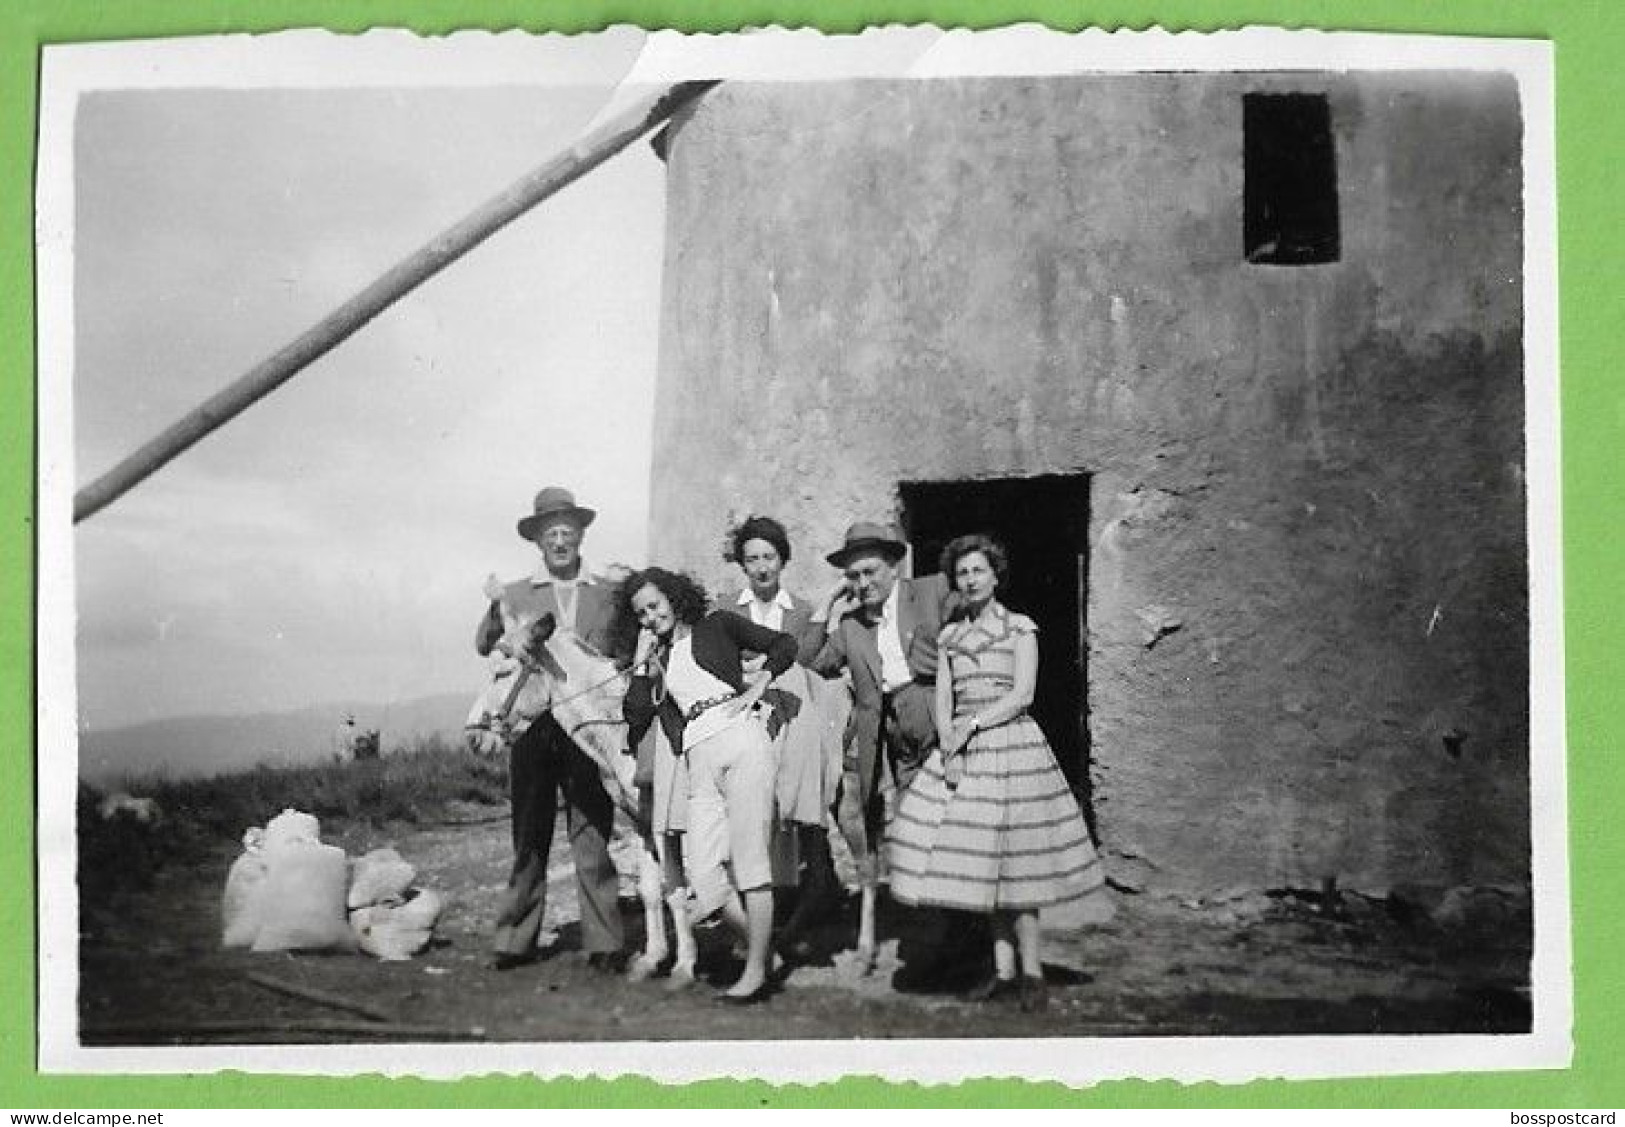 Luso - Buçaco - REAL PHOTO - Moinho De Vento, 1957 - Molen - Windmill - Moulin - Portugal - Windmills